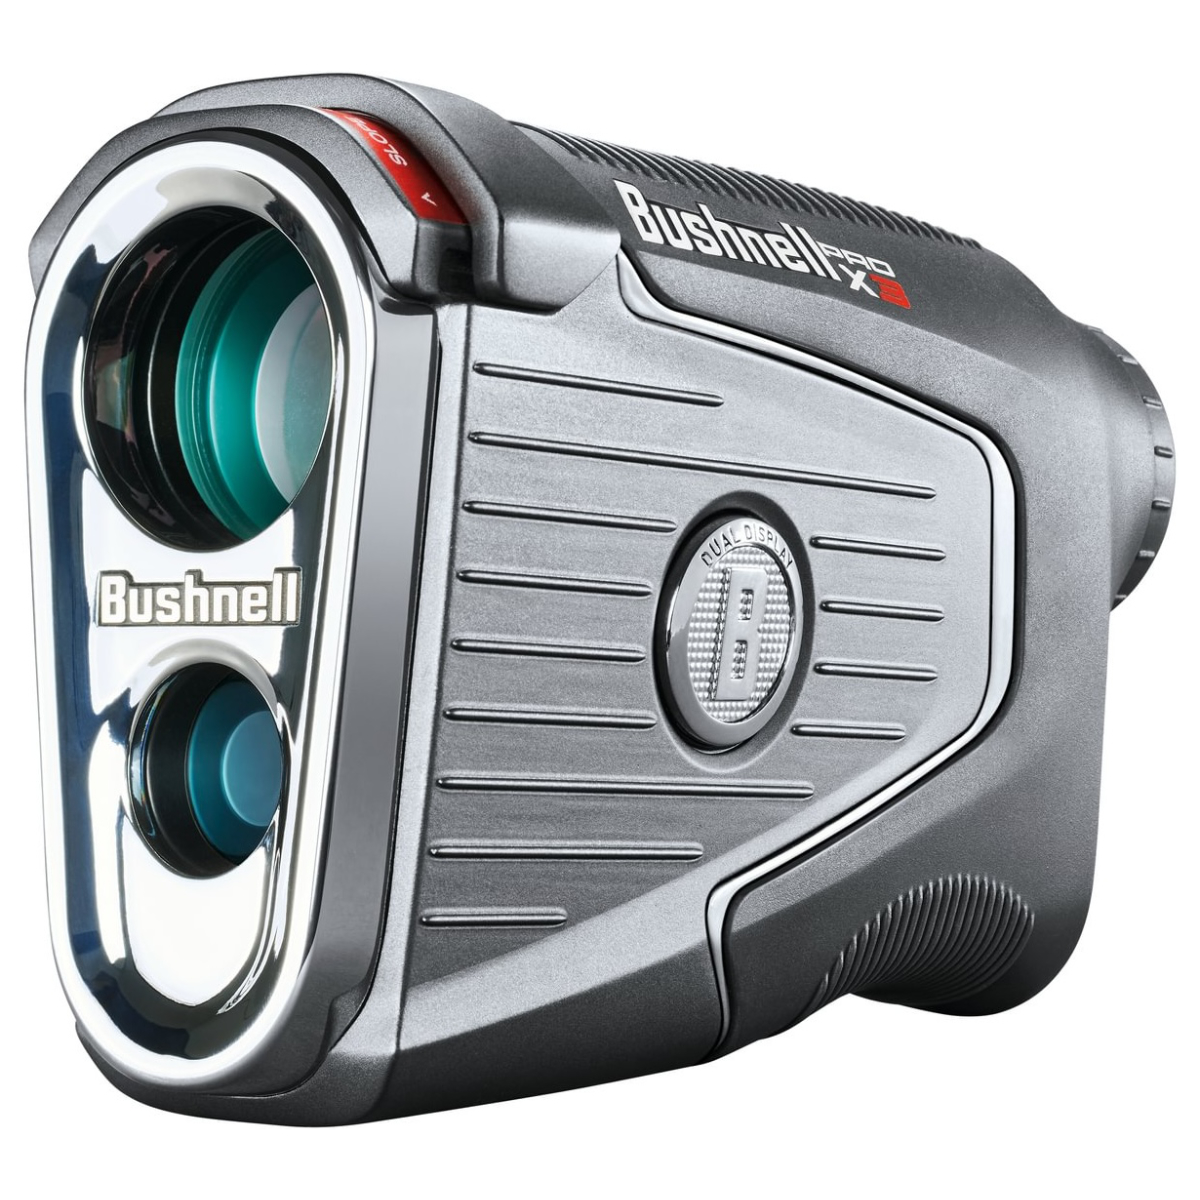 Bushnell Laser Pro X3 Black